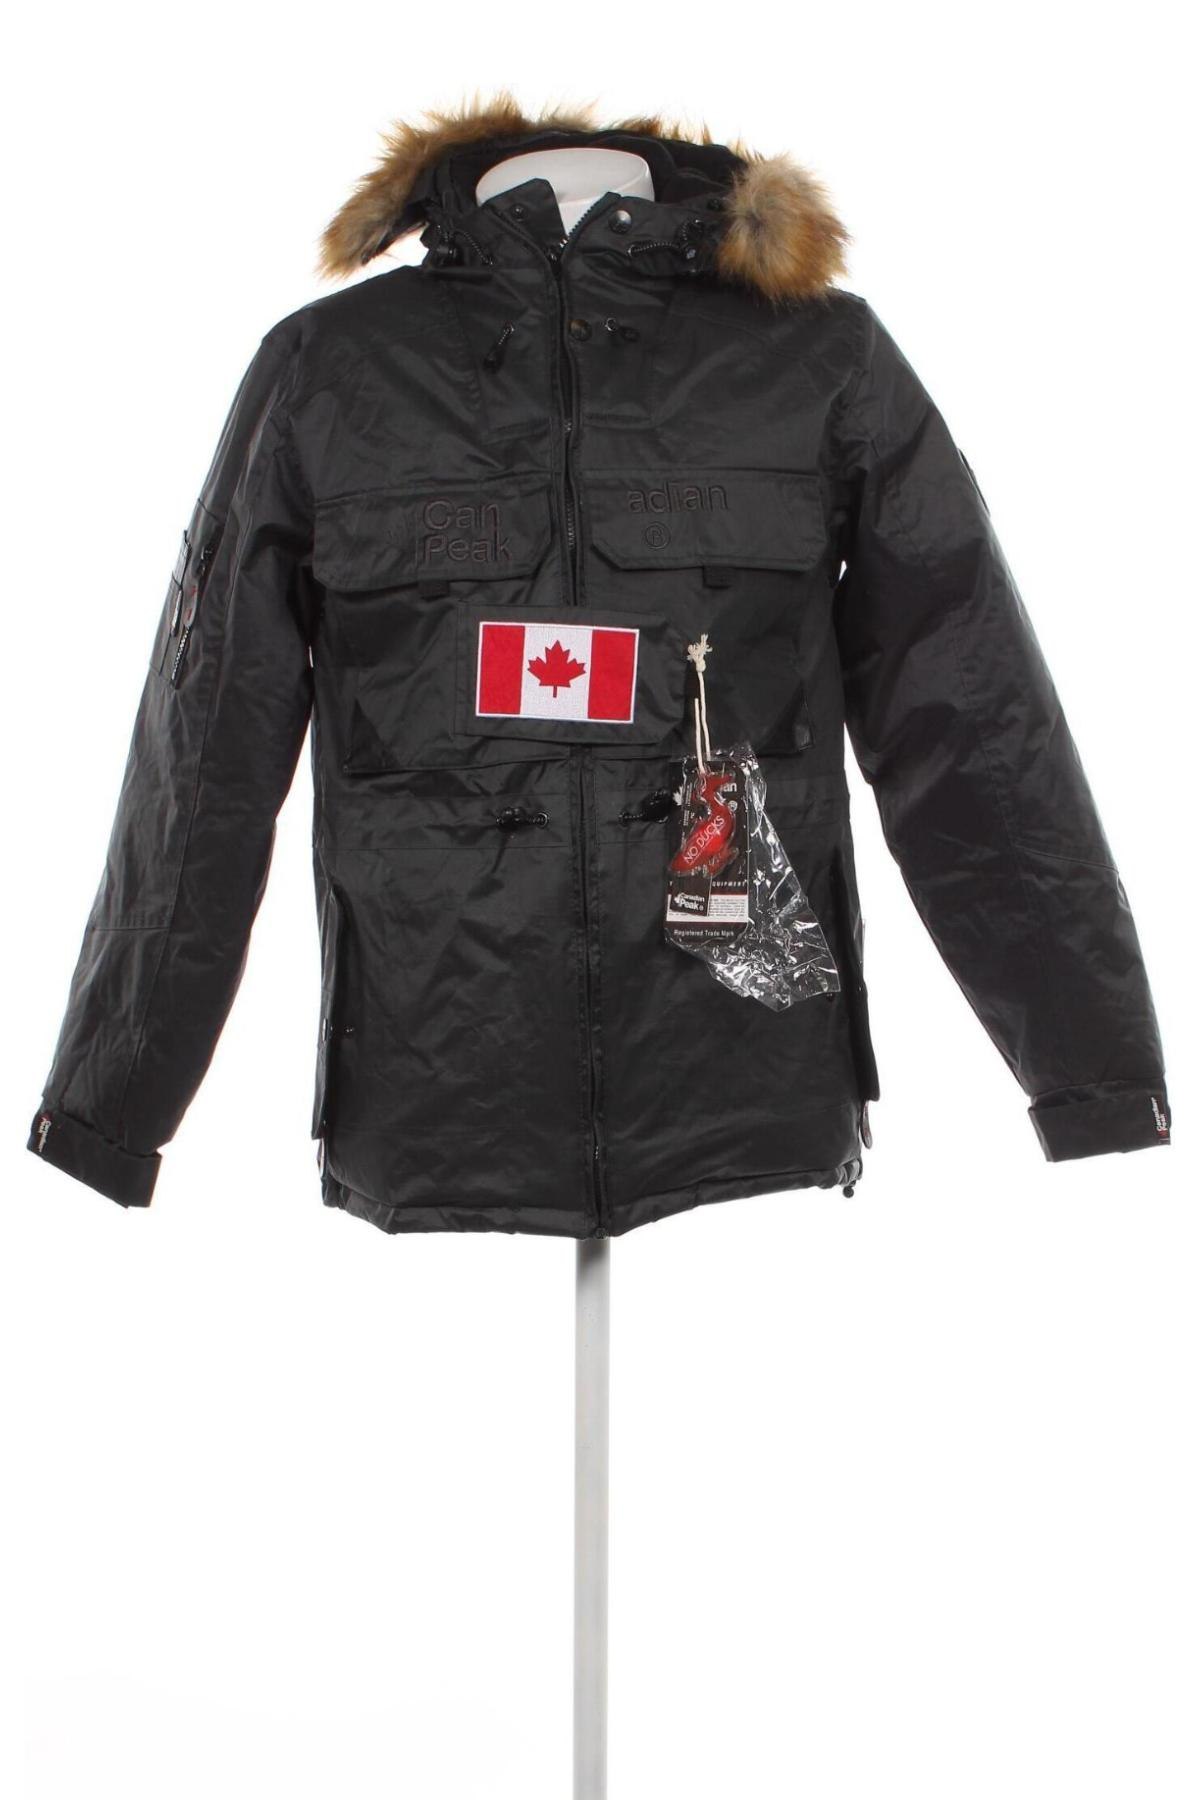 Herrenjacke Canadian Peak, Größe S, Farbe Grau, Preis 69,40 €